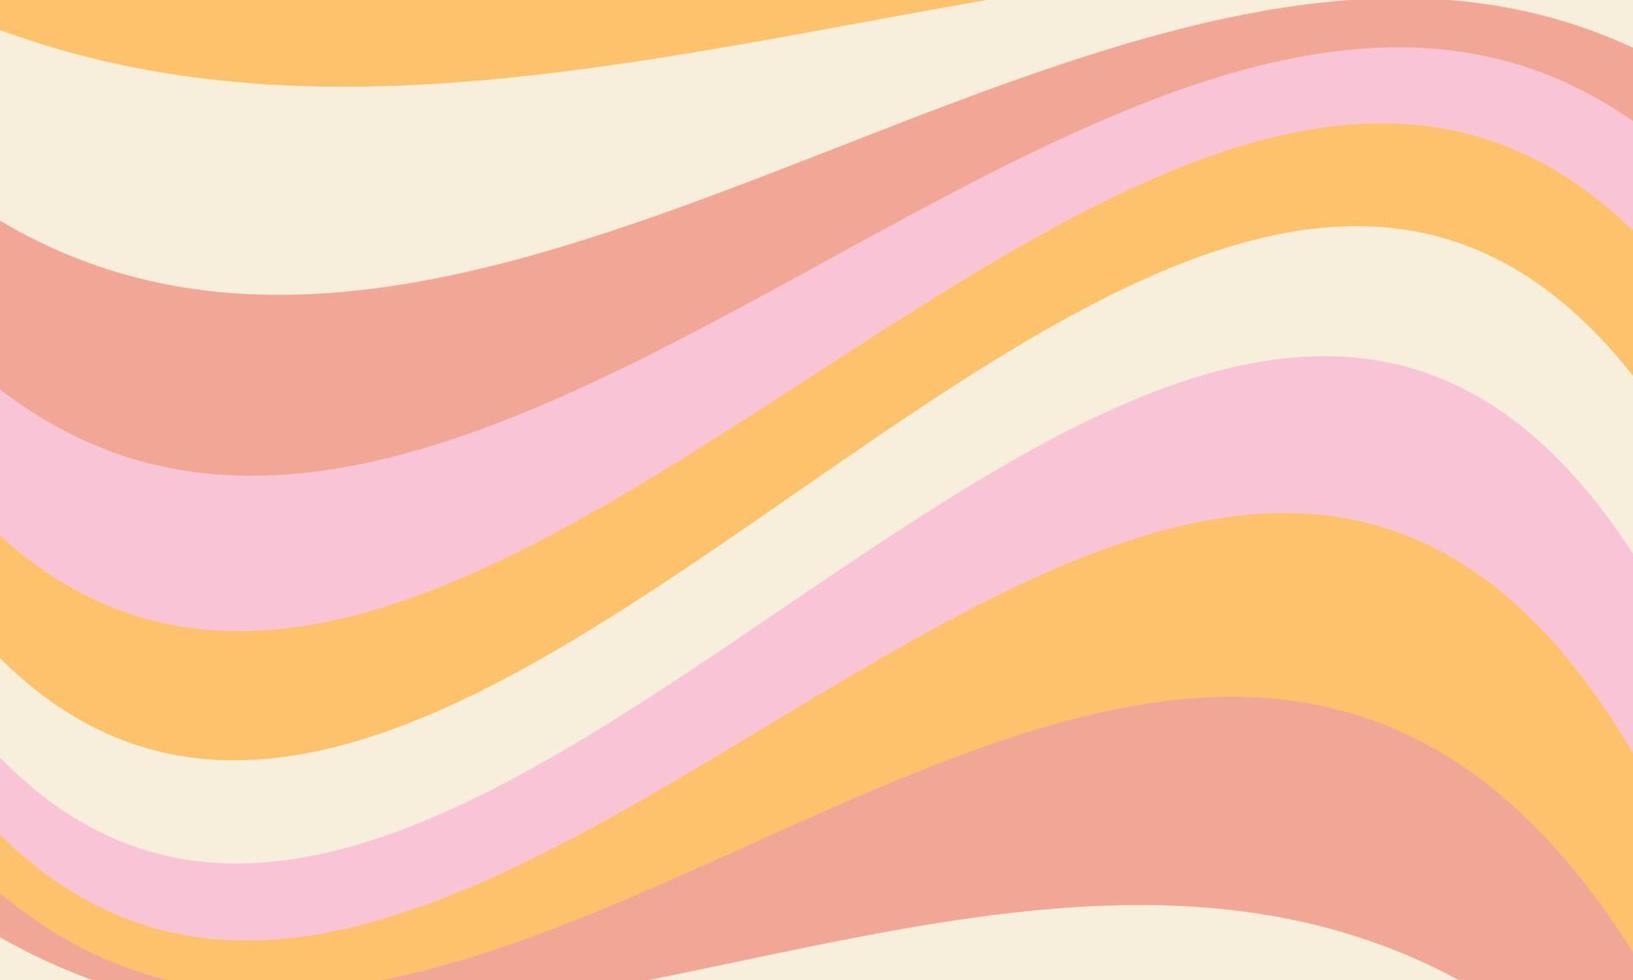 abstrakter wellenförmiger Regenbogenhintergrund im Stil der 60-70er Jahre. vintage groovy pastell retro hintergrund. Hippie-Ästhetik. vektor